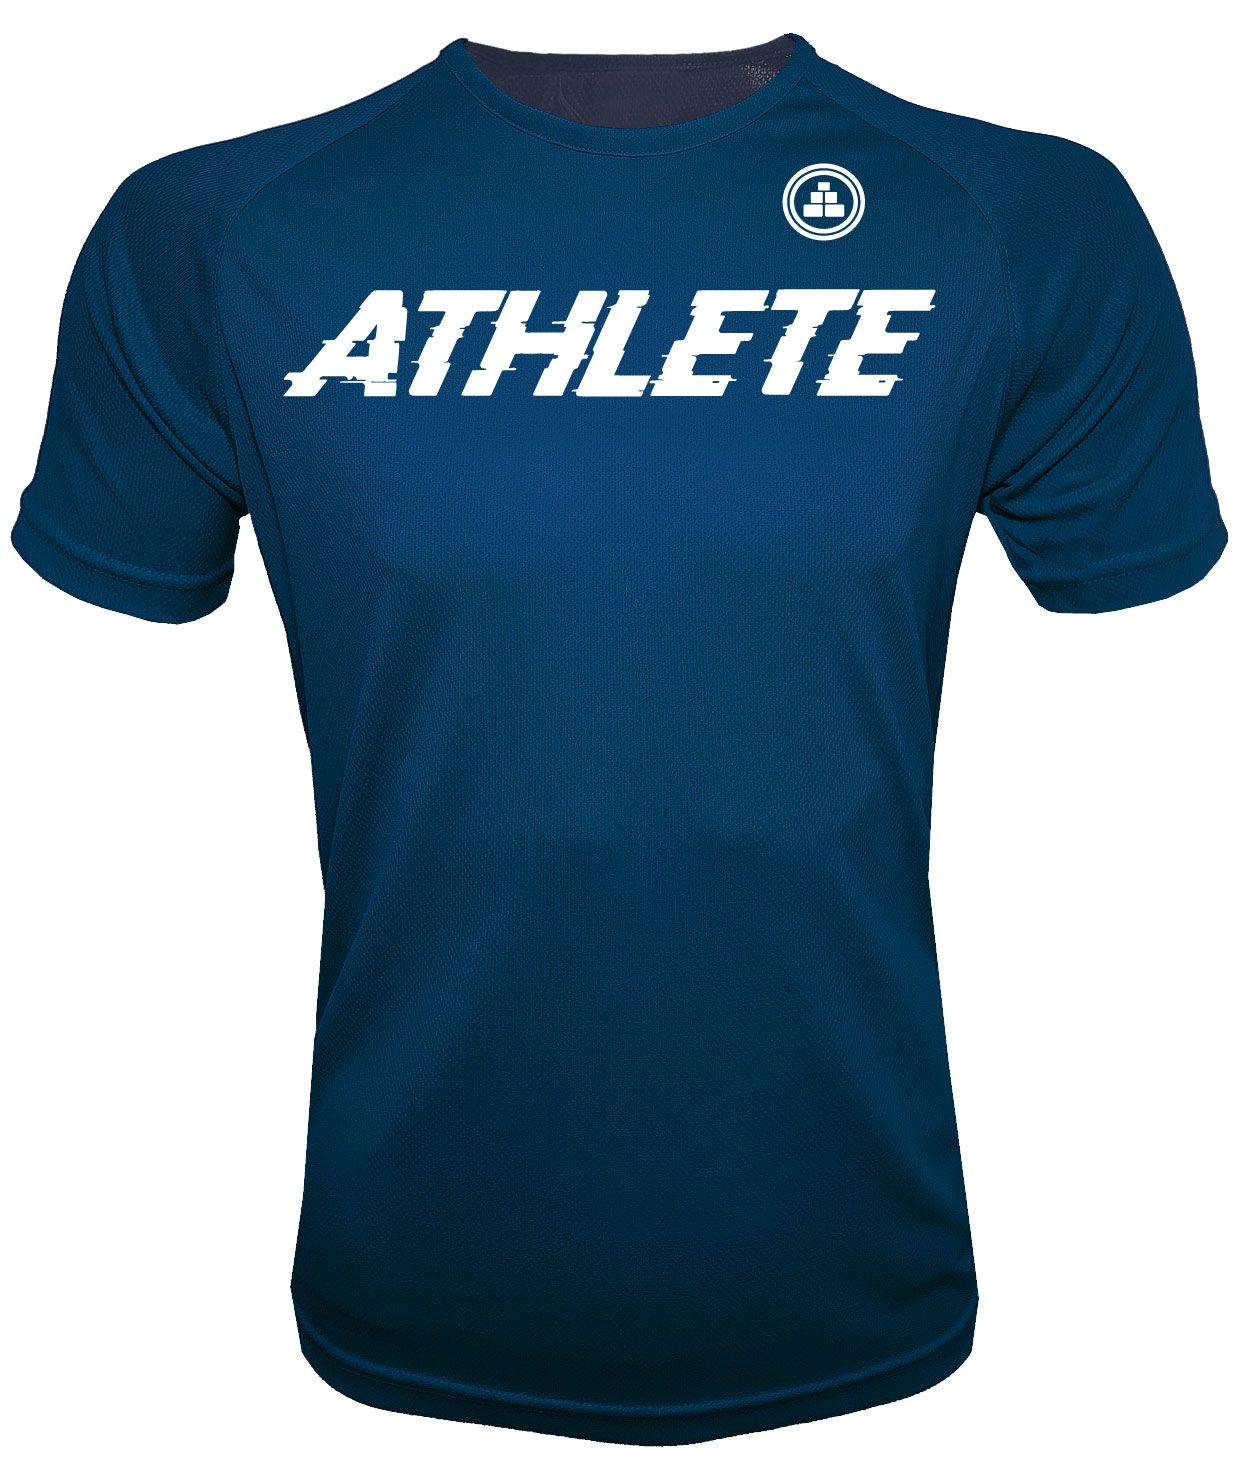 Camiseta Atleta H AM